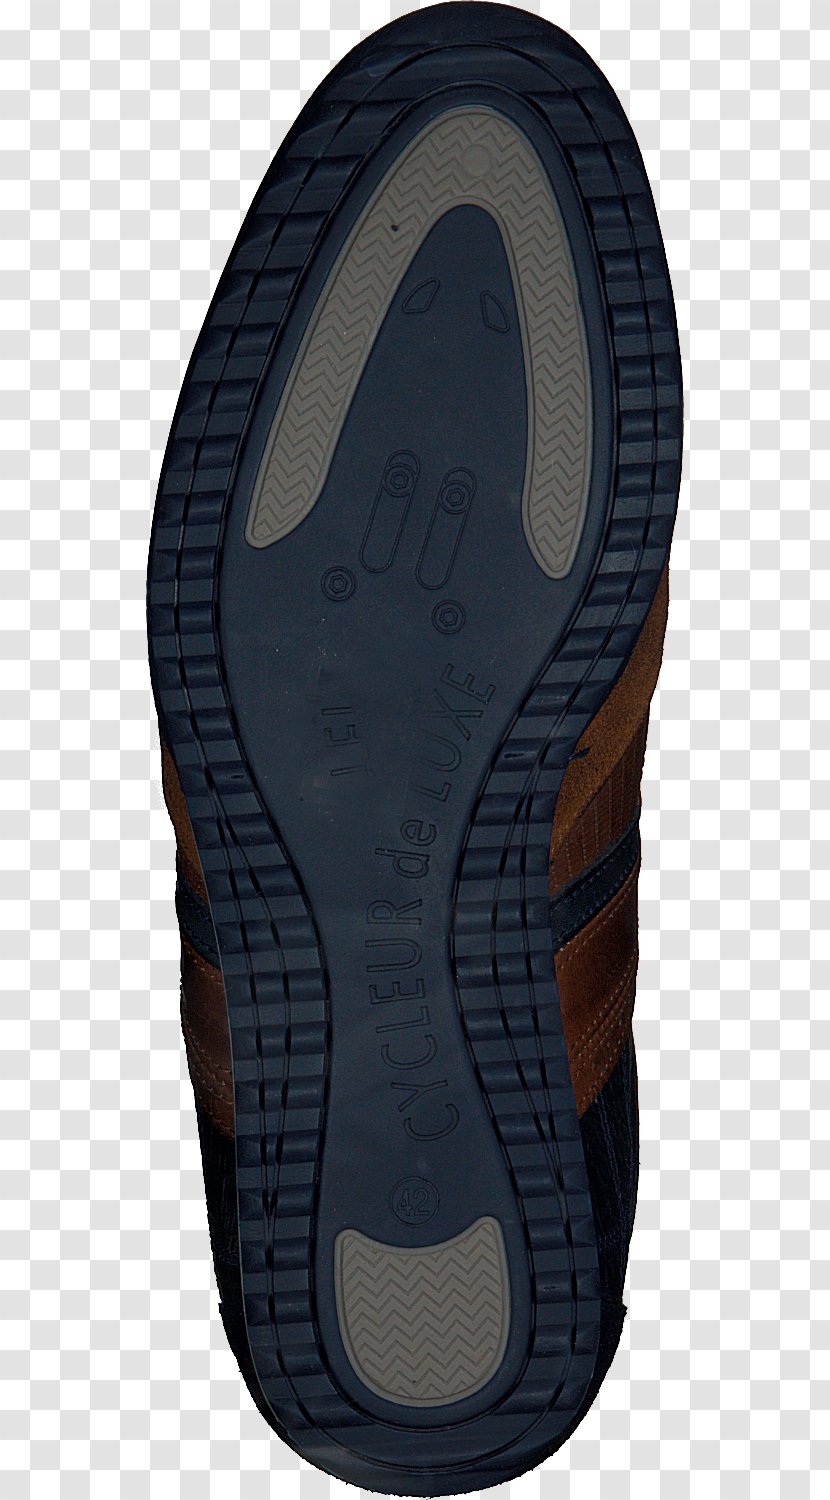 Shoe Product Design Flip-flops - Supermoto Crash Transparent PNG